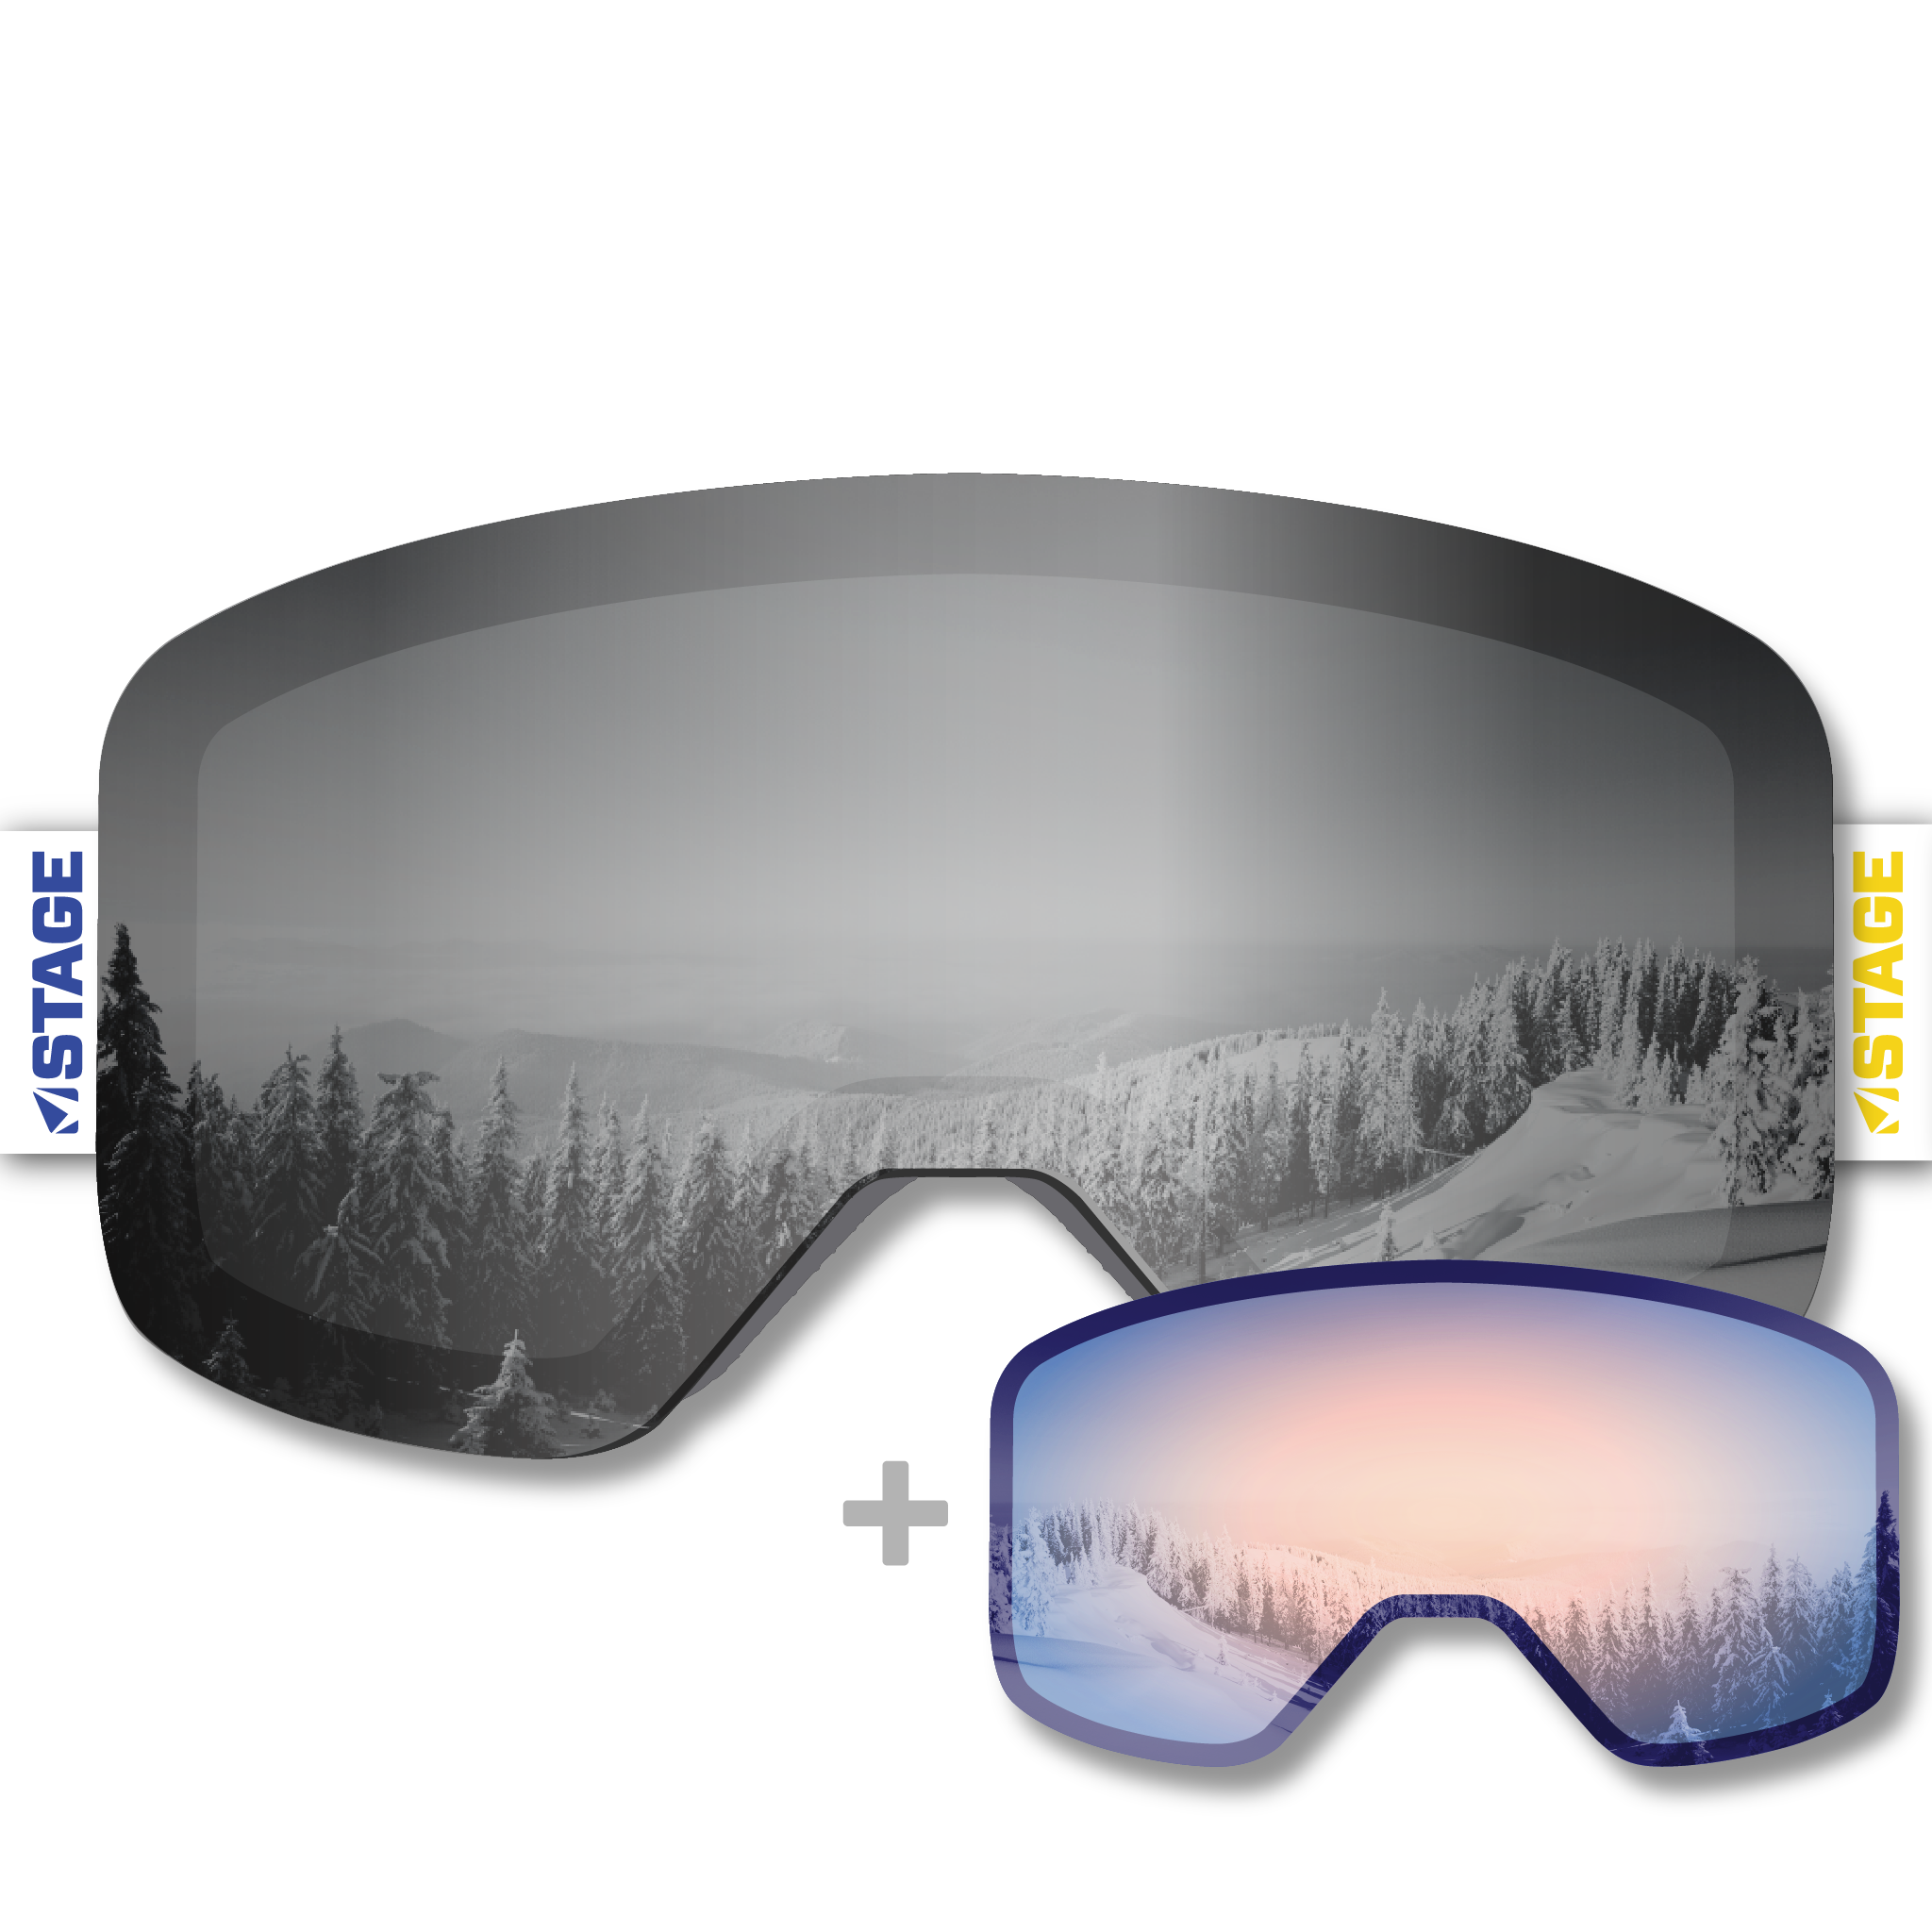 Lounsbury Adaptive Ski Program Propnetic - Magnetic Ski Goggle + Bonus Lens